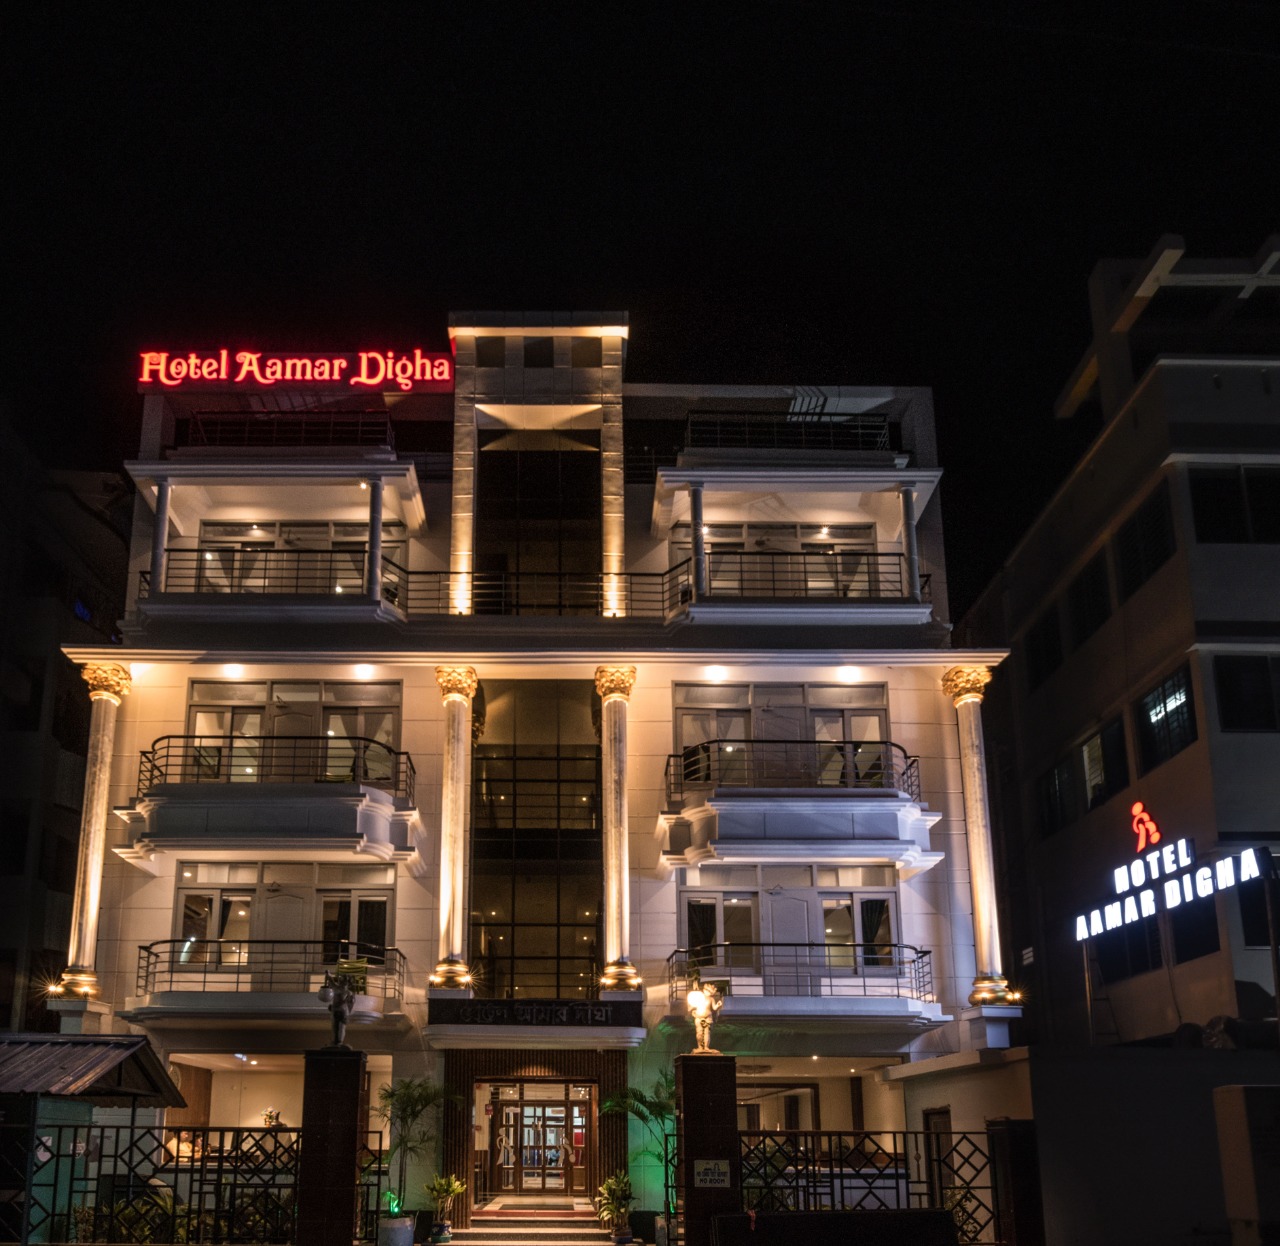 Hotel Amar Digha